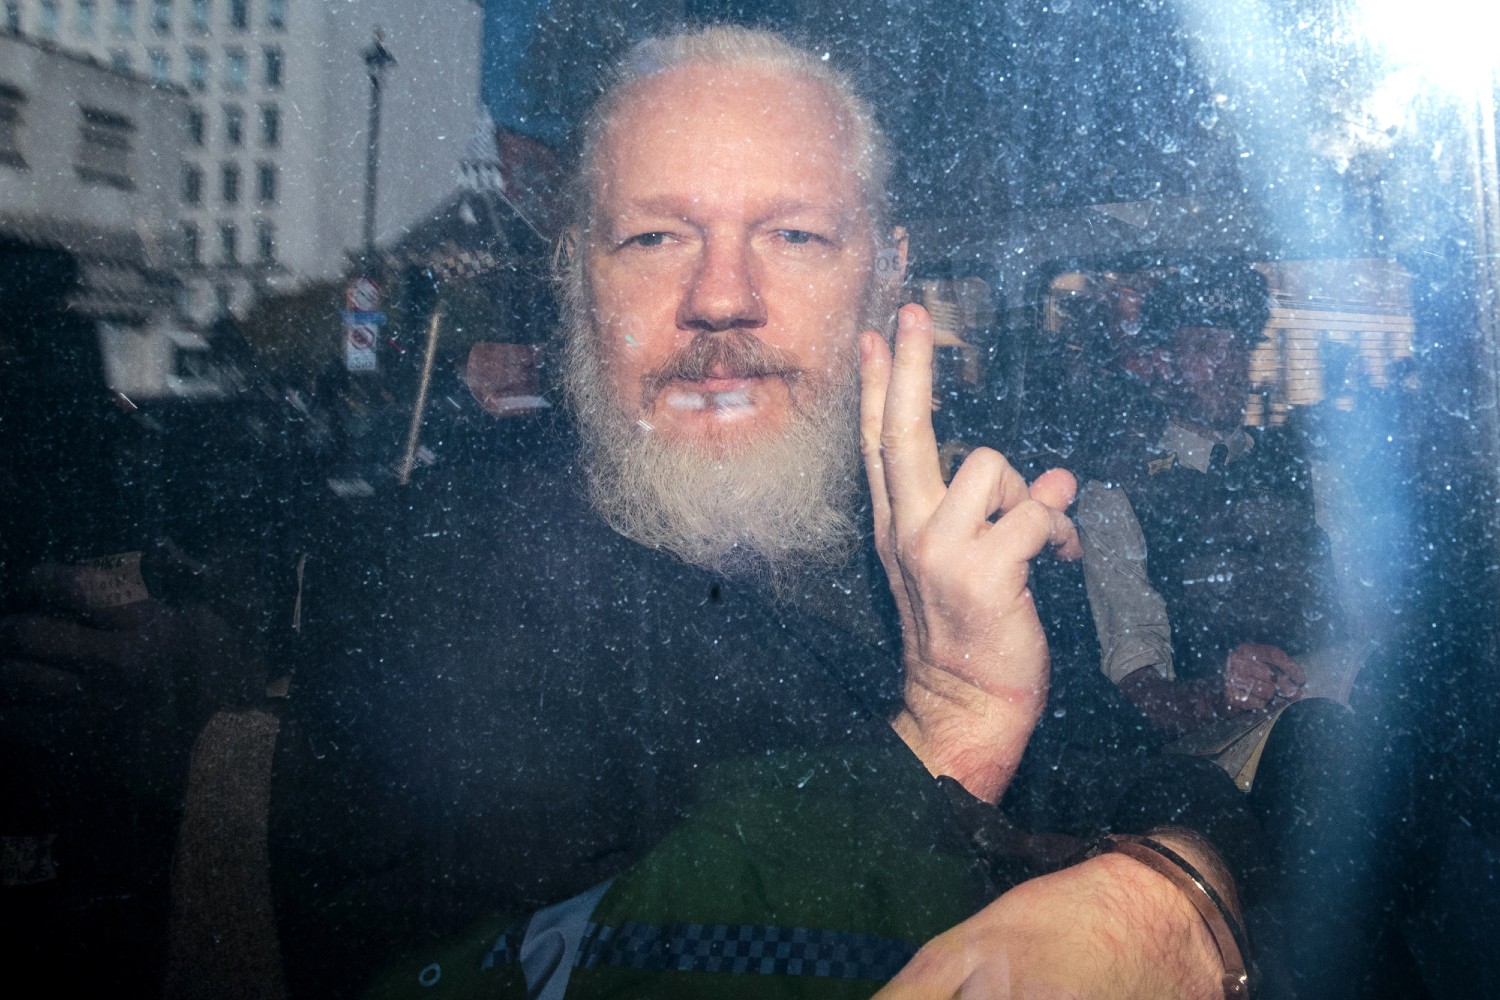 Оснивач Викиликса Џулијан Асанж унутар аутомобила на путу за суд у Лондону, 11. април 2019. (Фото: Jack Taylor/Getty Images)